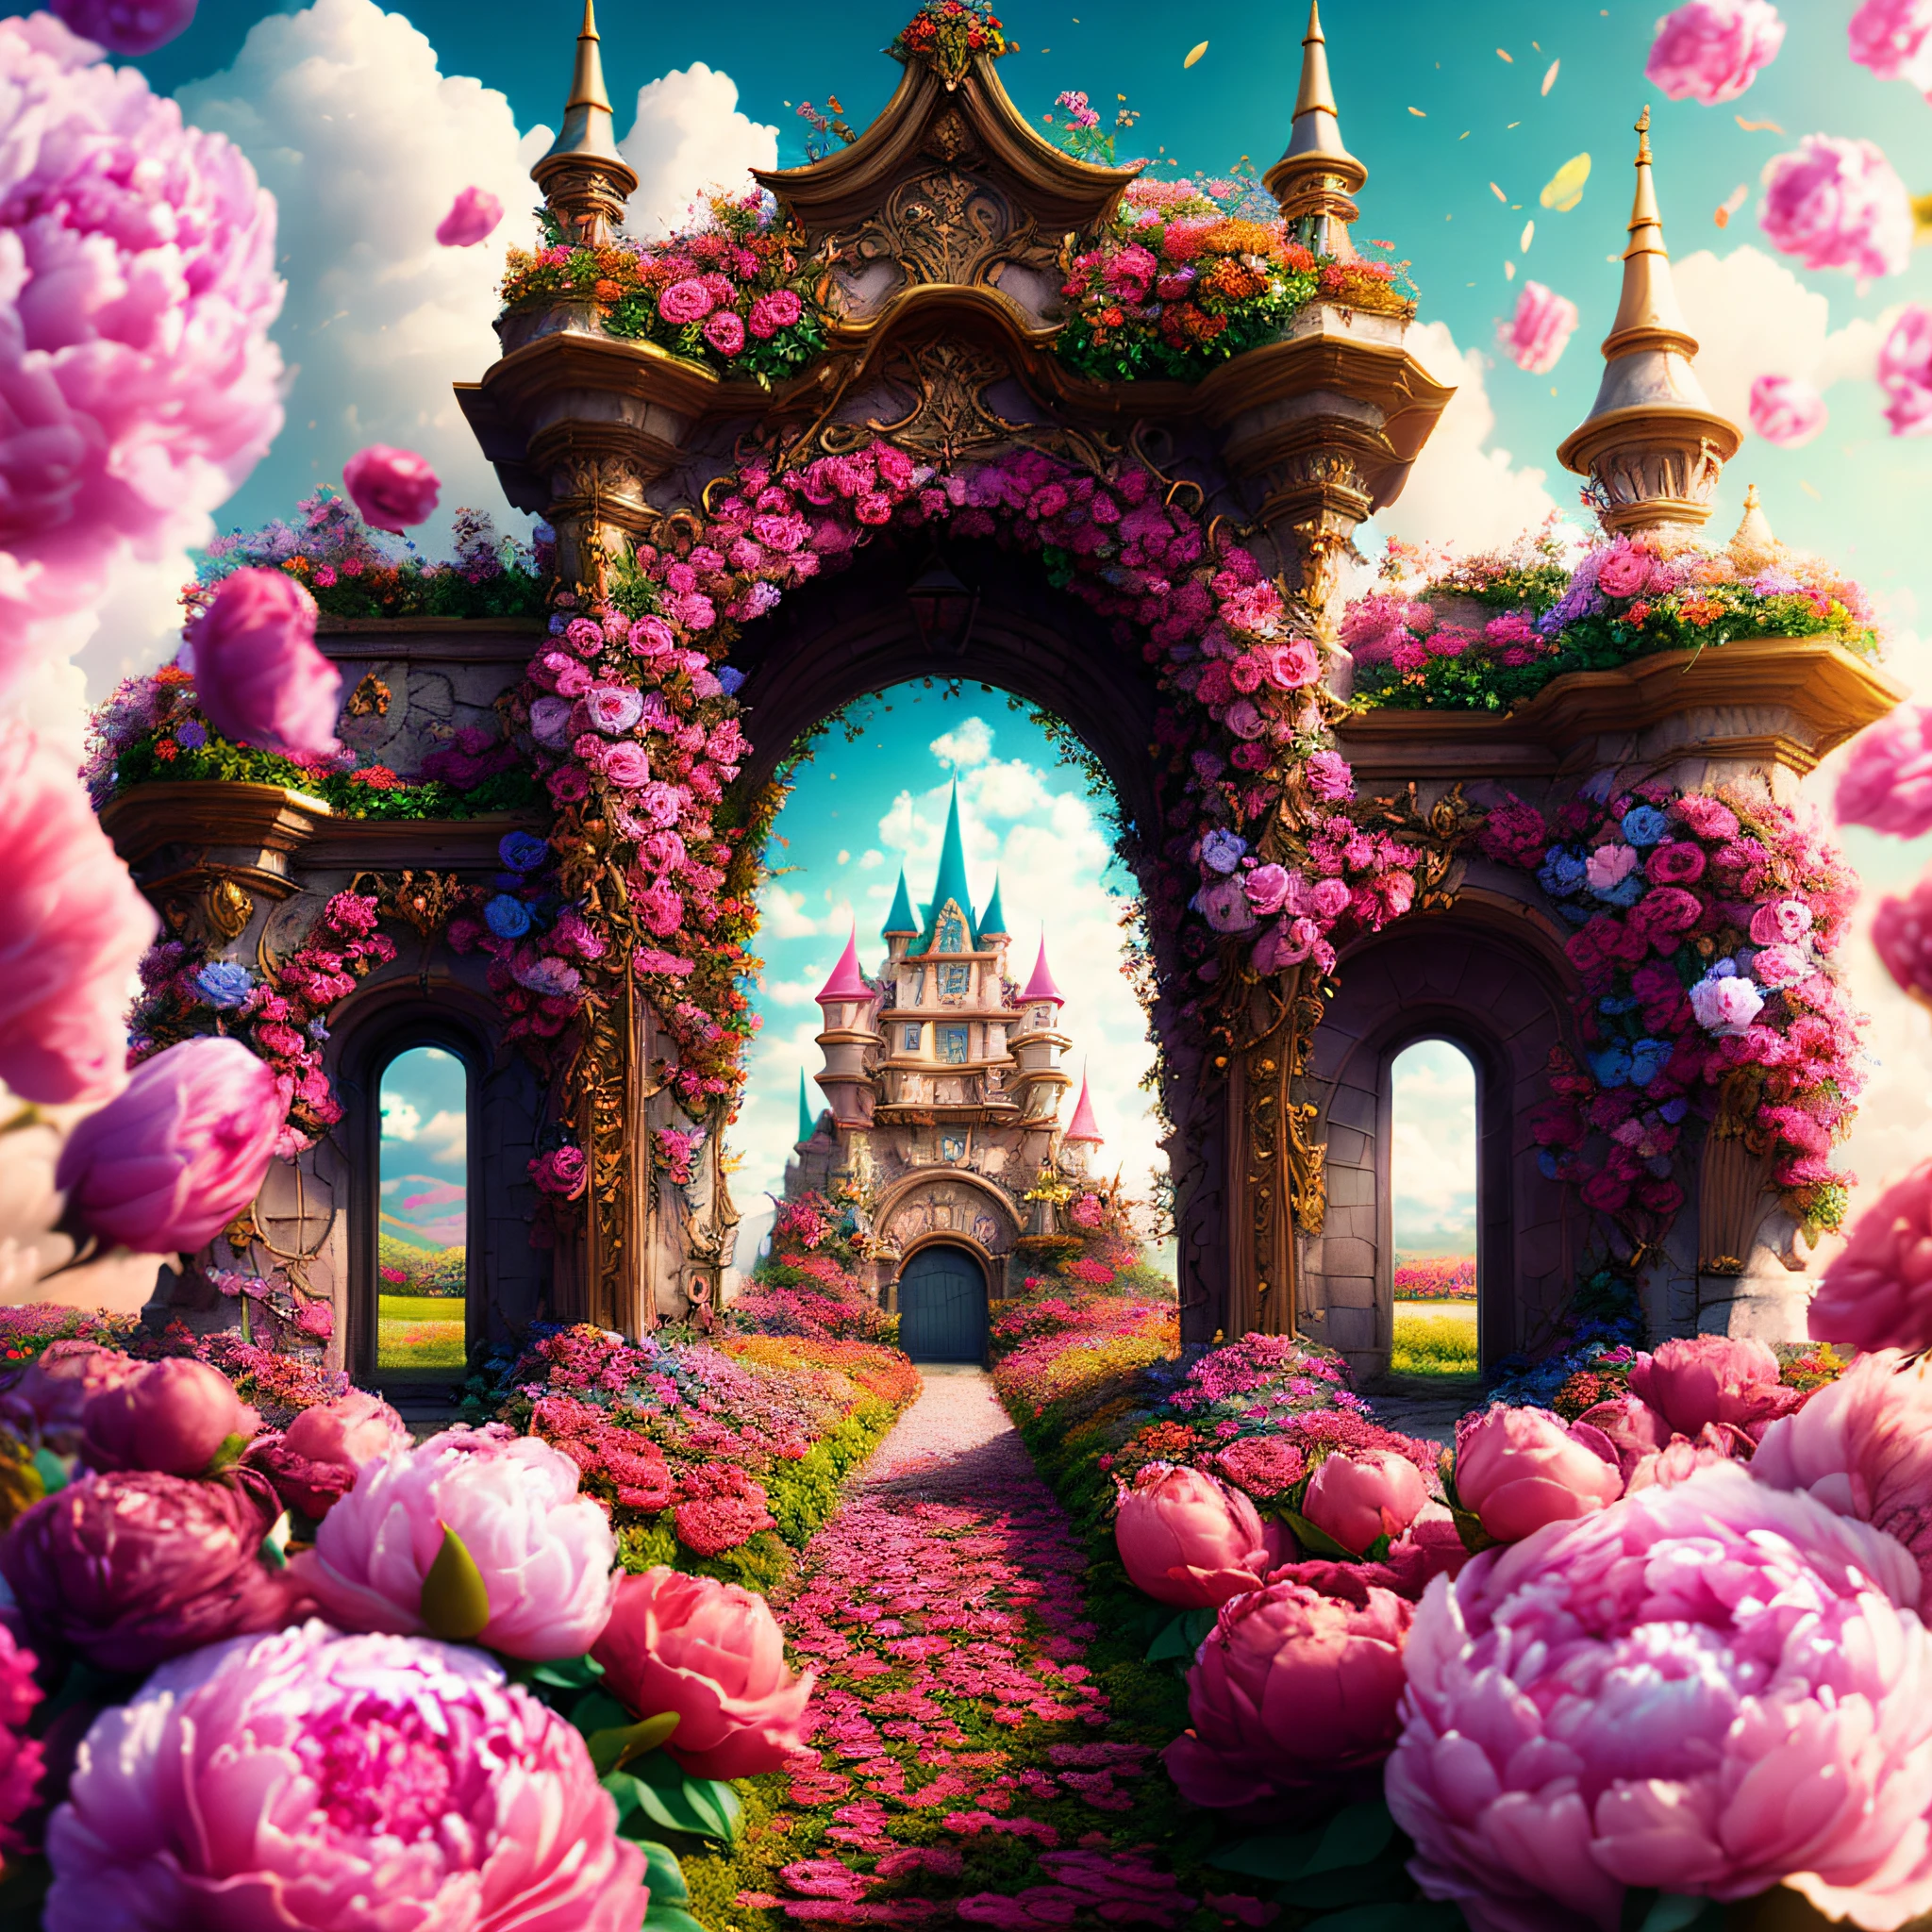 Фото (стиль цветочных ворот:1) Вход в замок утопает в цветах, Дисней, пион, кинематографический, Сюрреалистический, HD